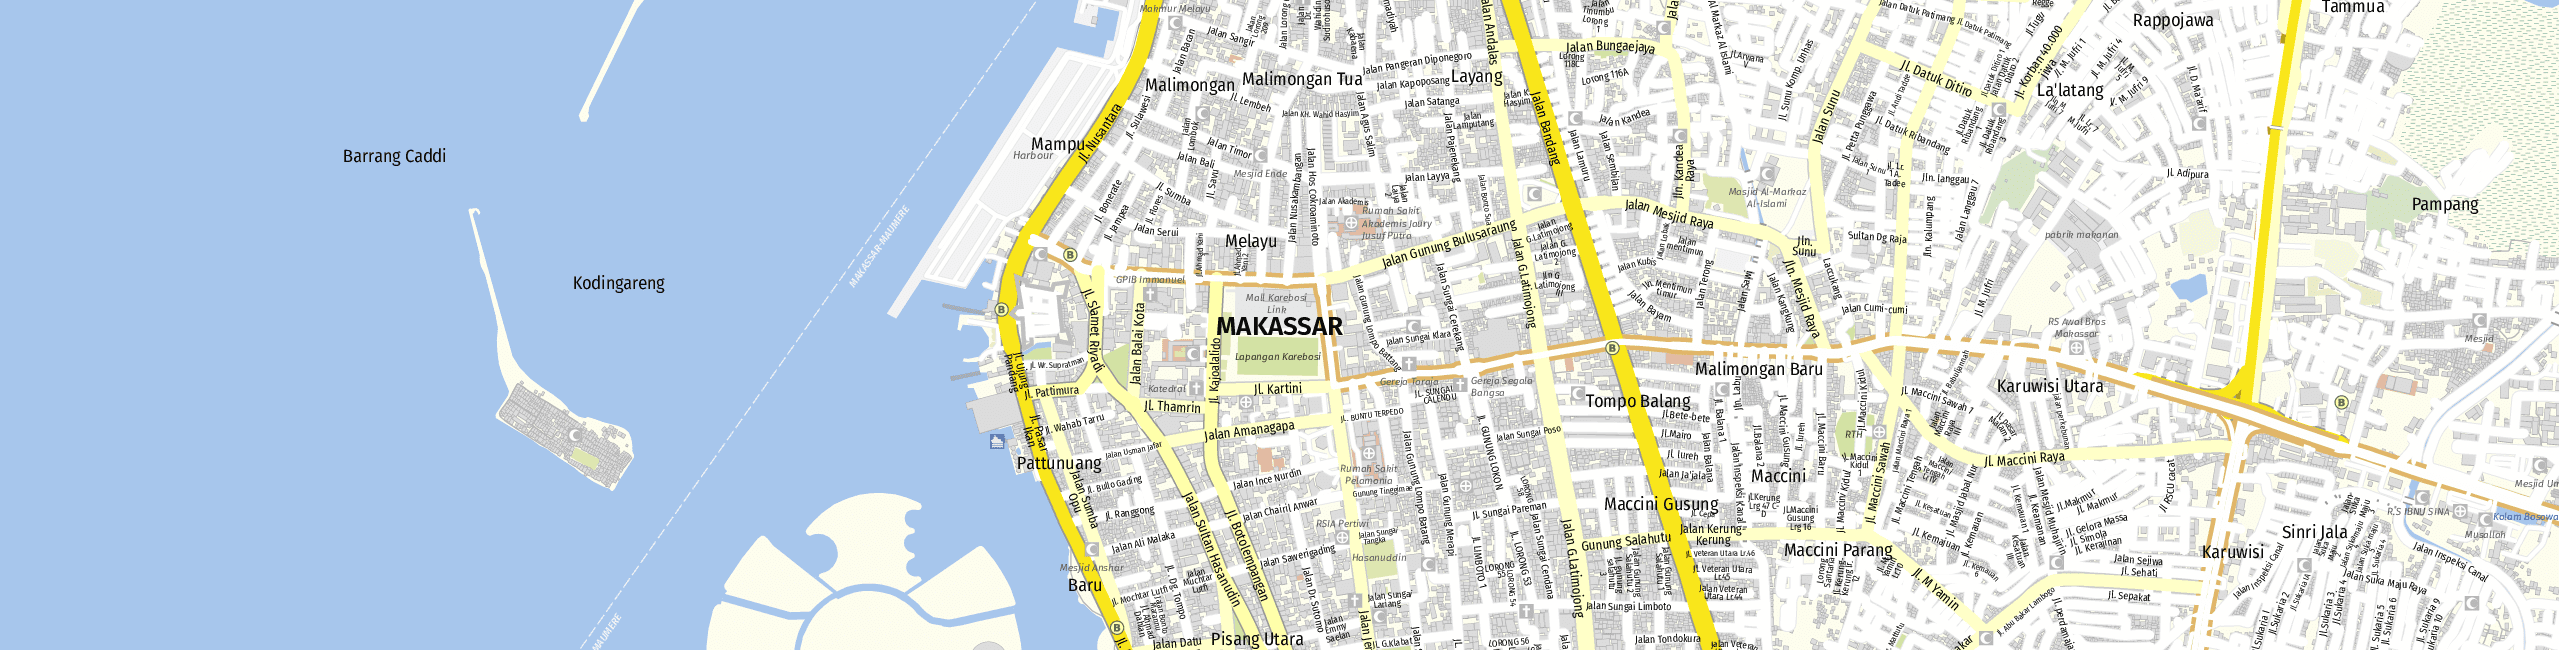 Stadtplan Makassar zum Downloaden.